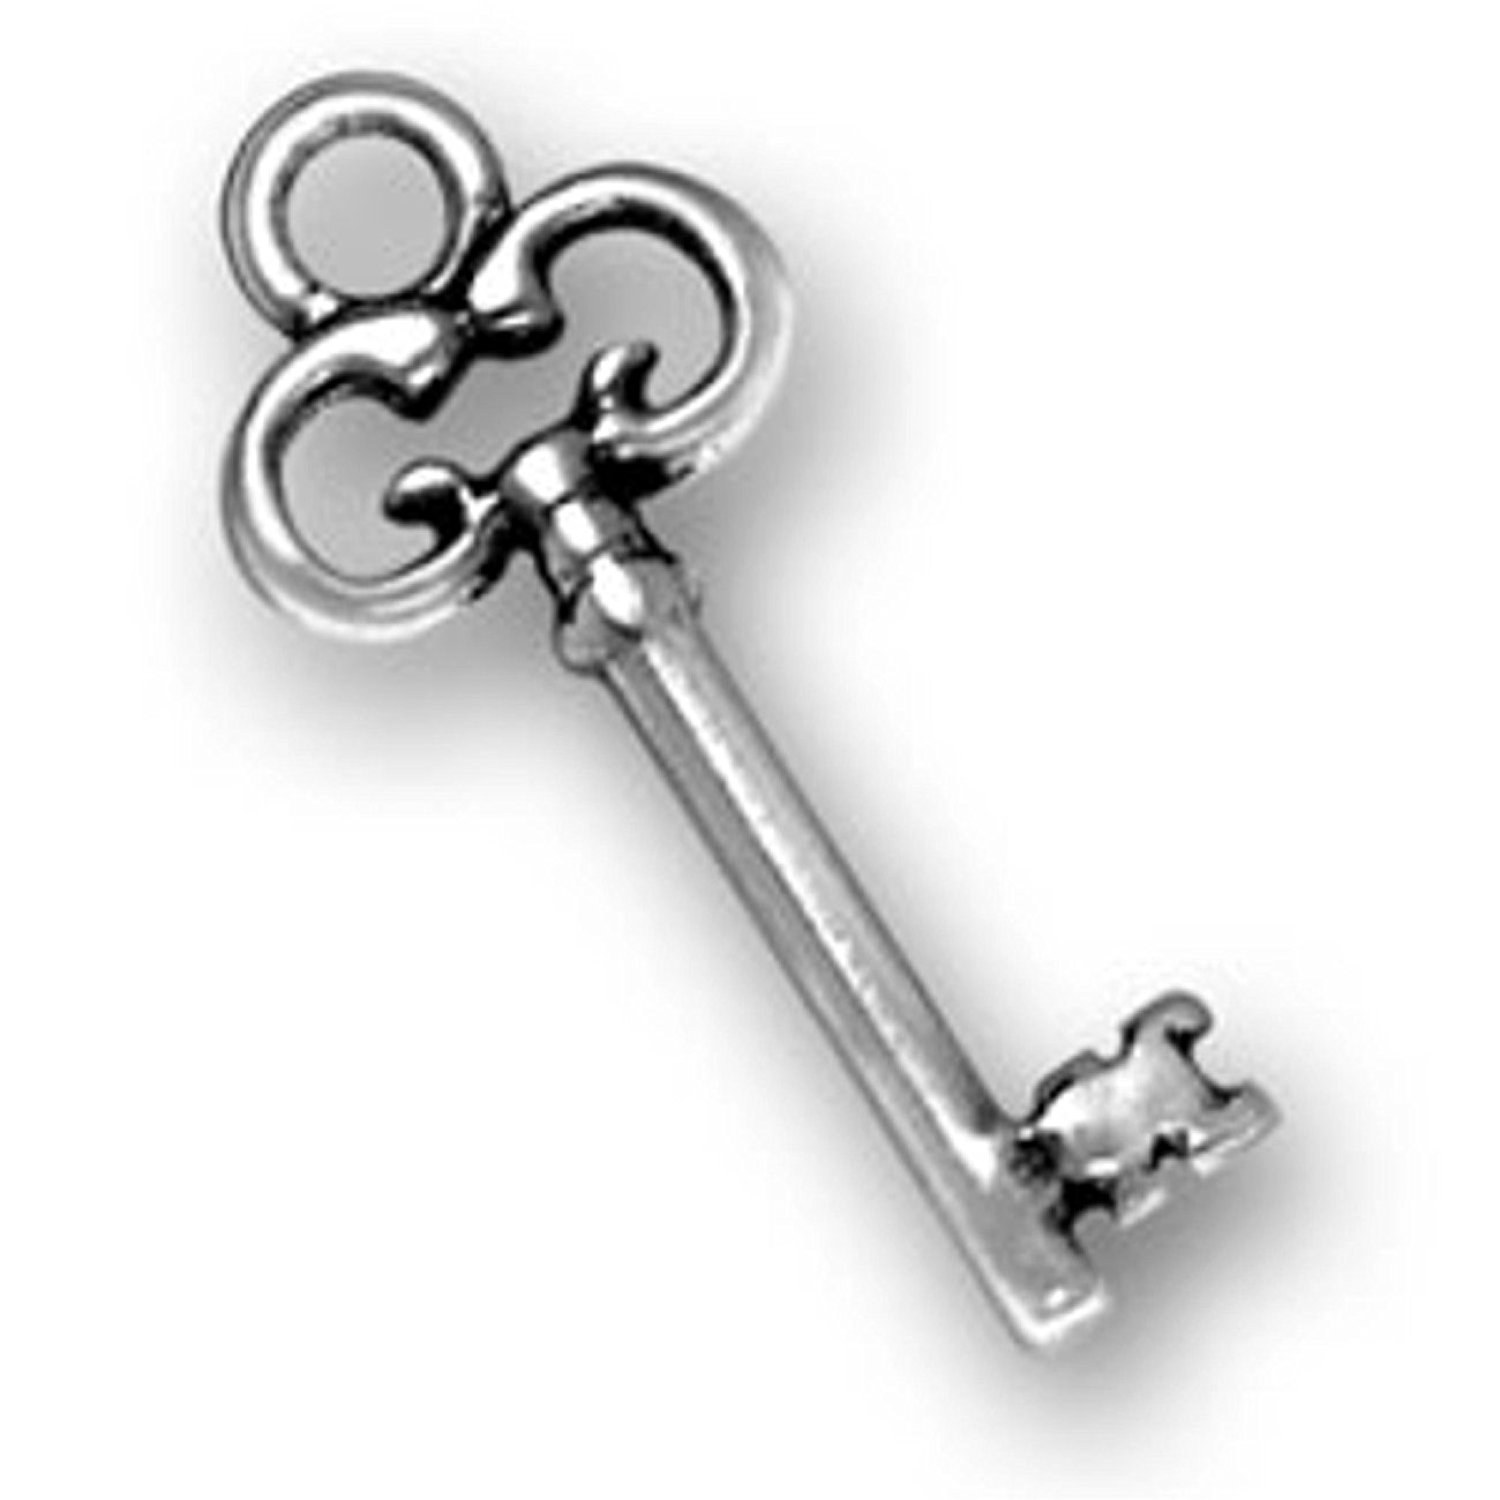 Бан ключи. Ключ. Ключ металлический. Железный ключ на белом фоне. Изображение ключа.